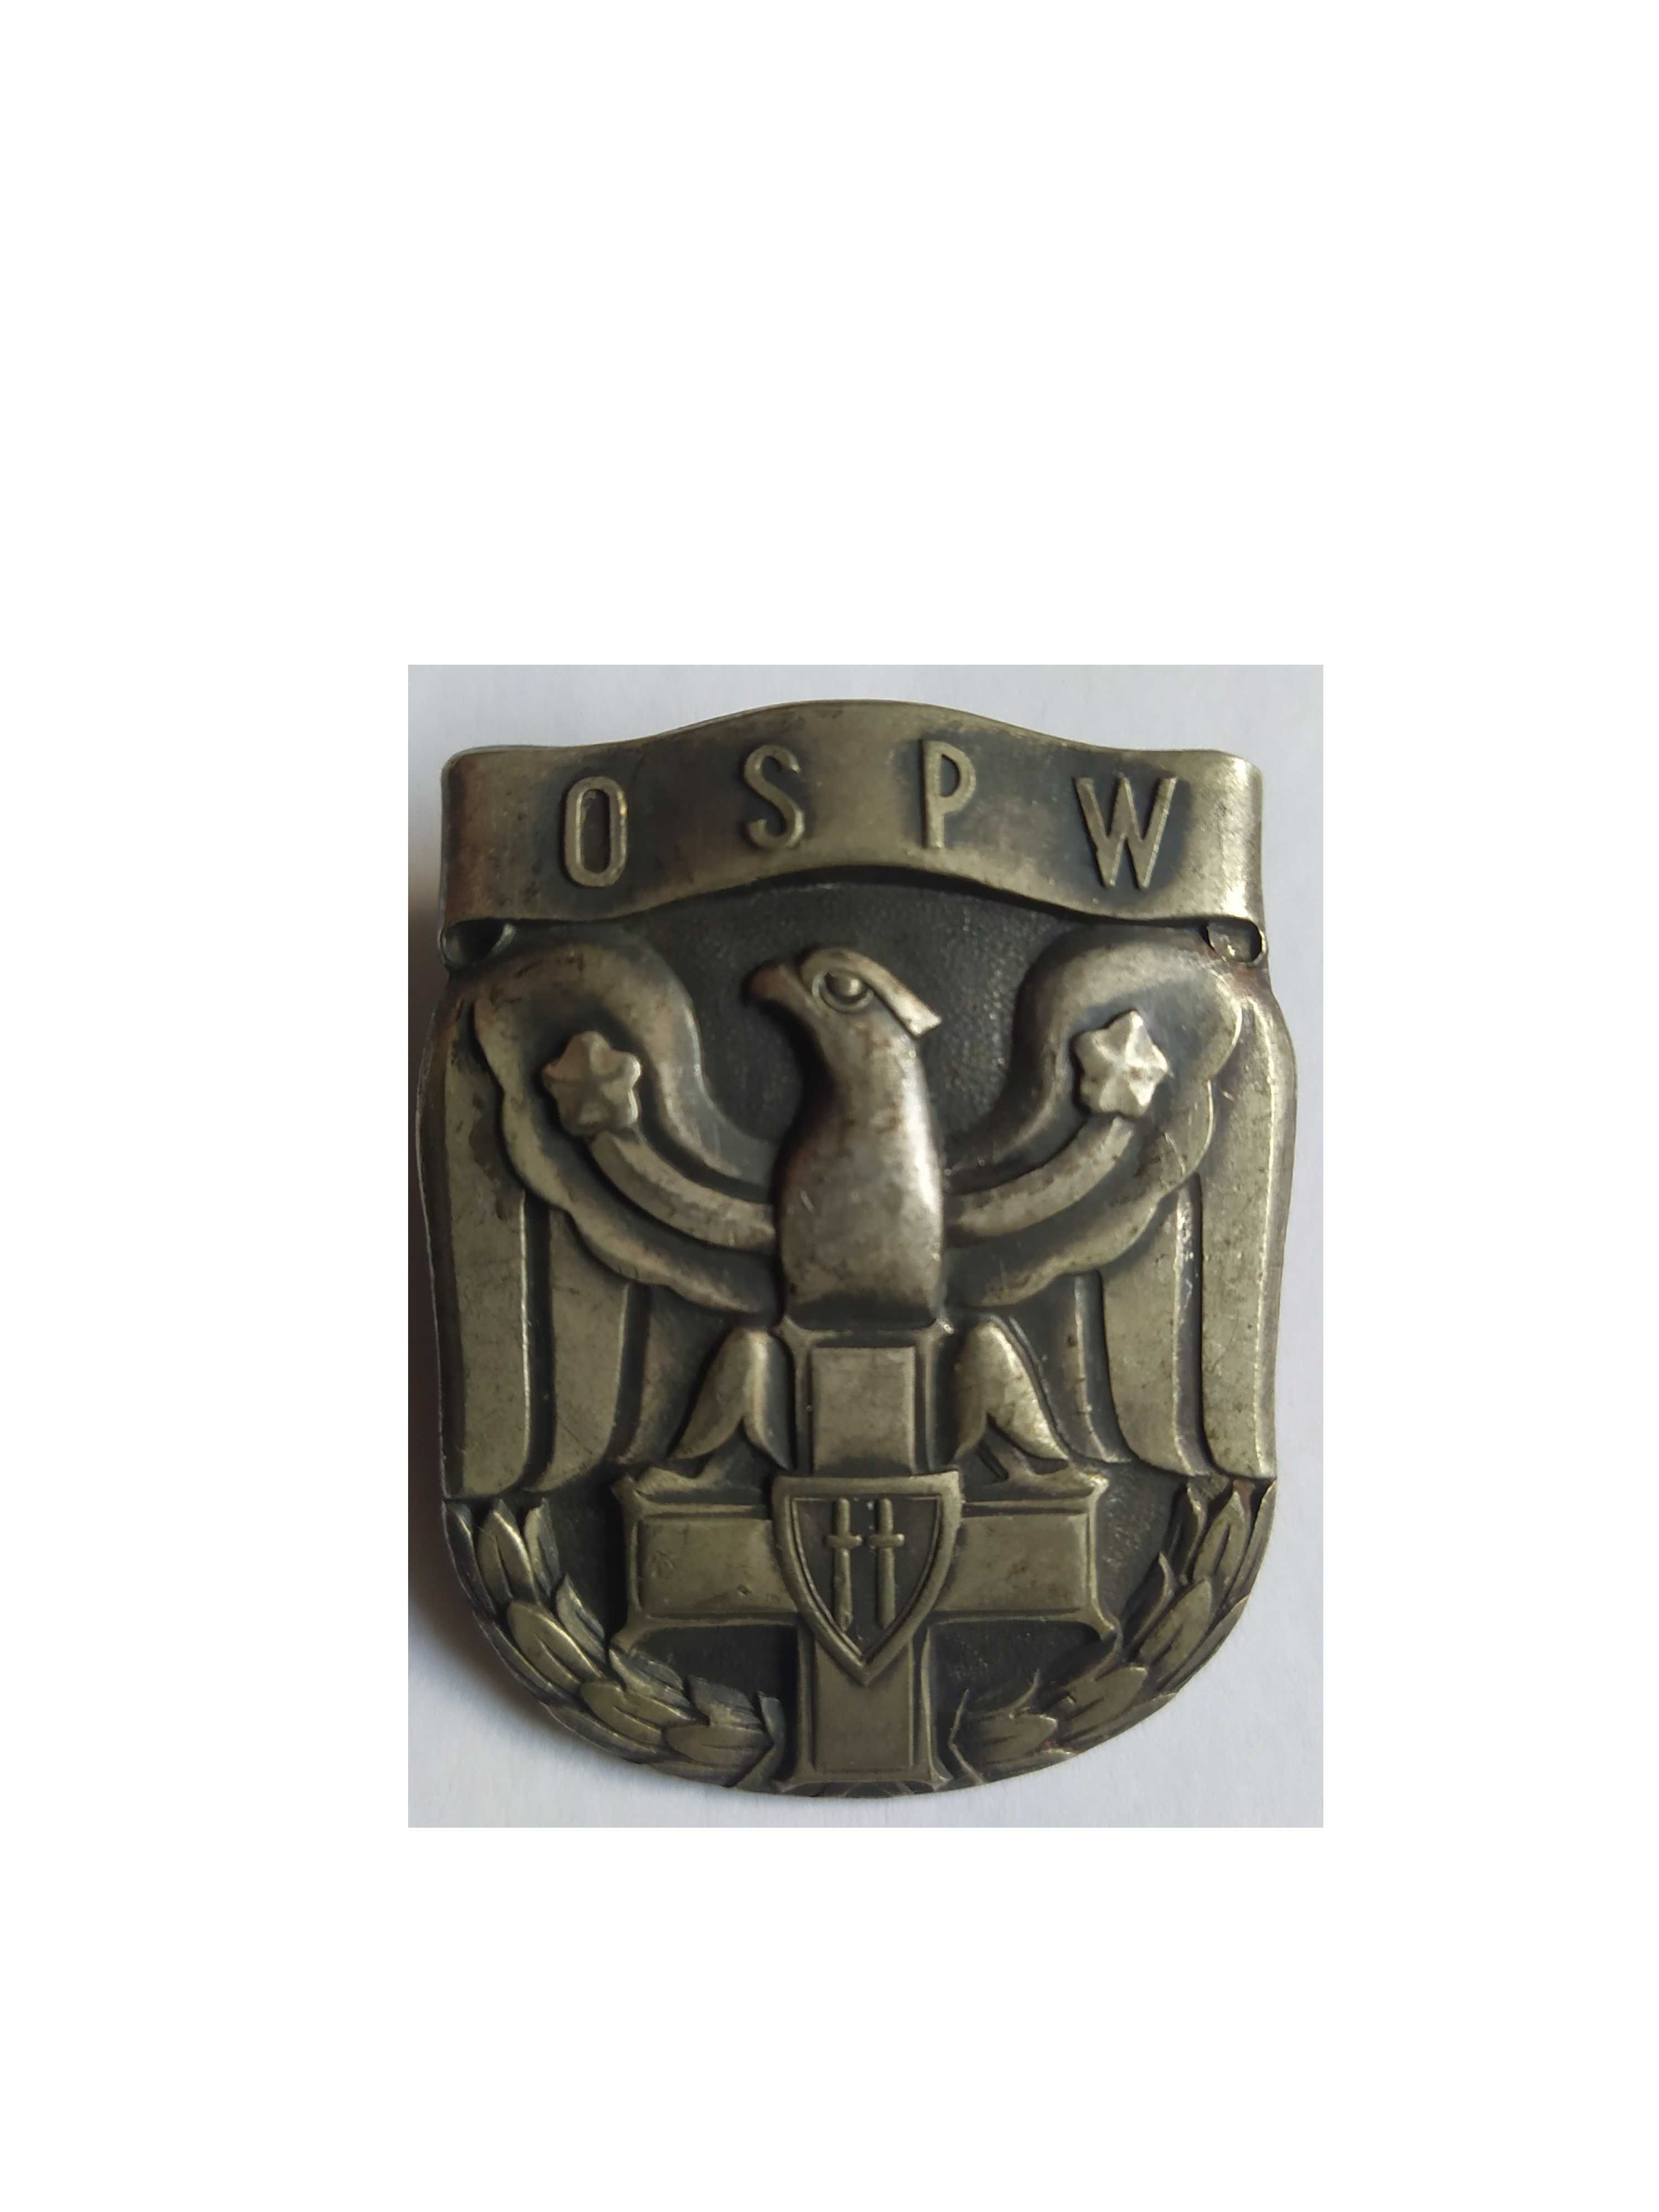 Odznaka OSPW 1947-OFICERSKA SZKOŁA Polityczno-Wychowawcza